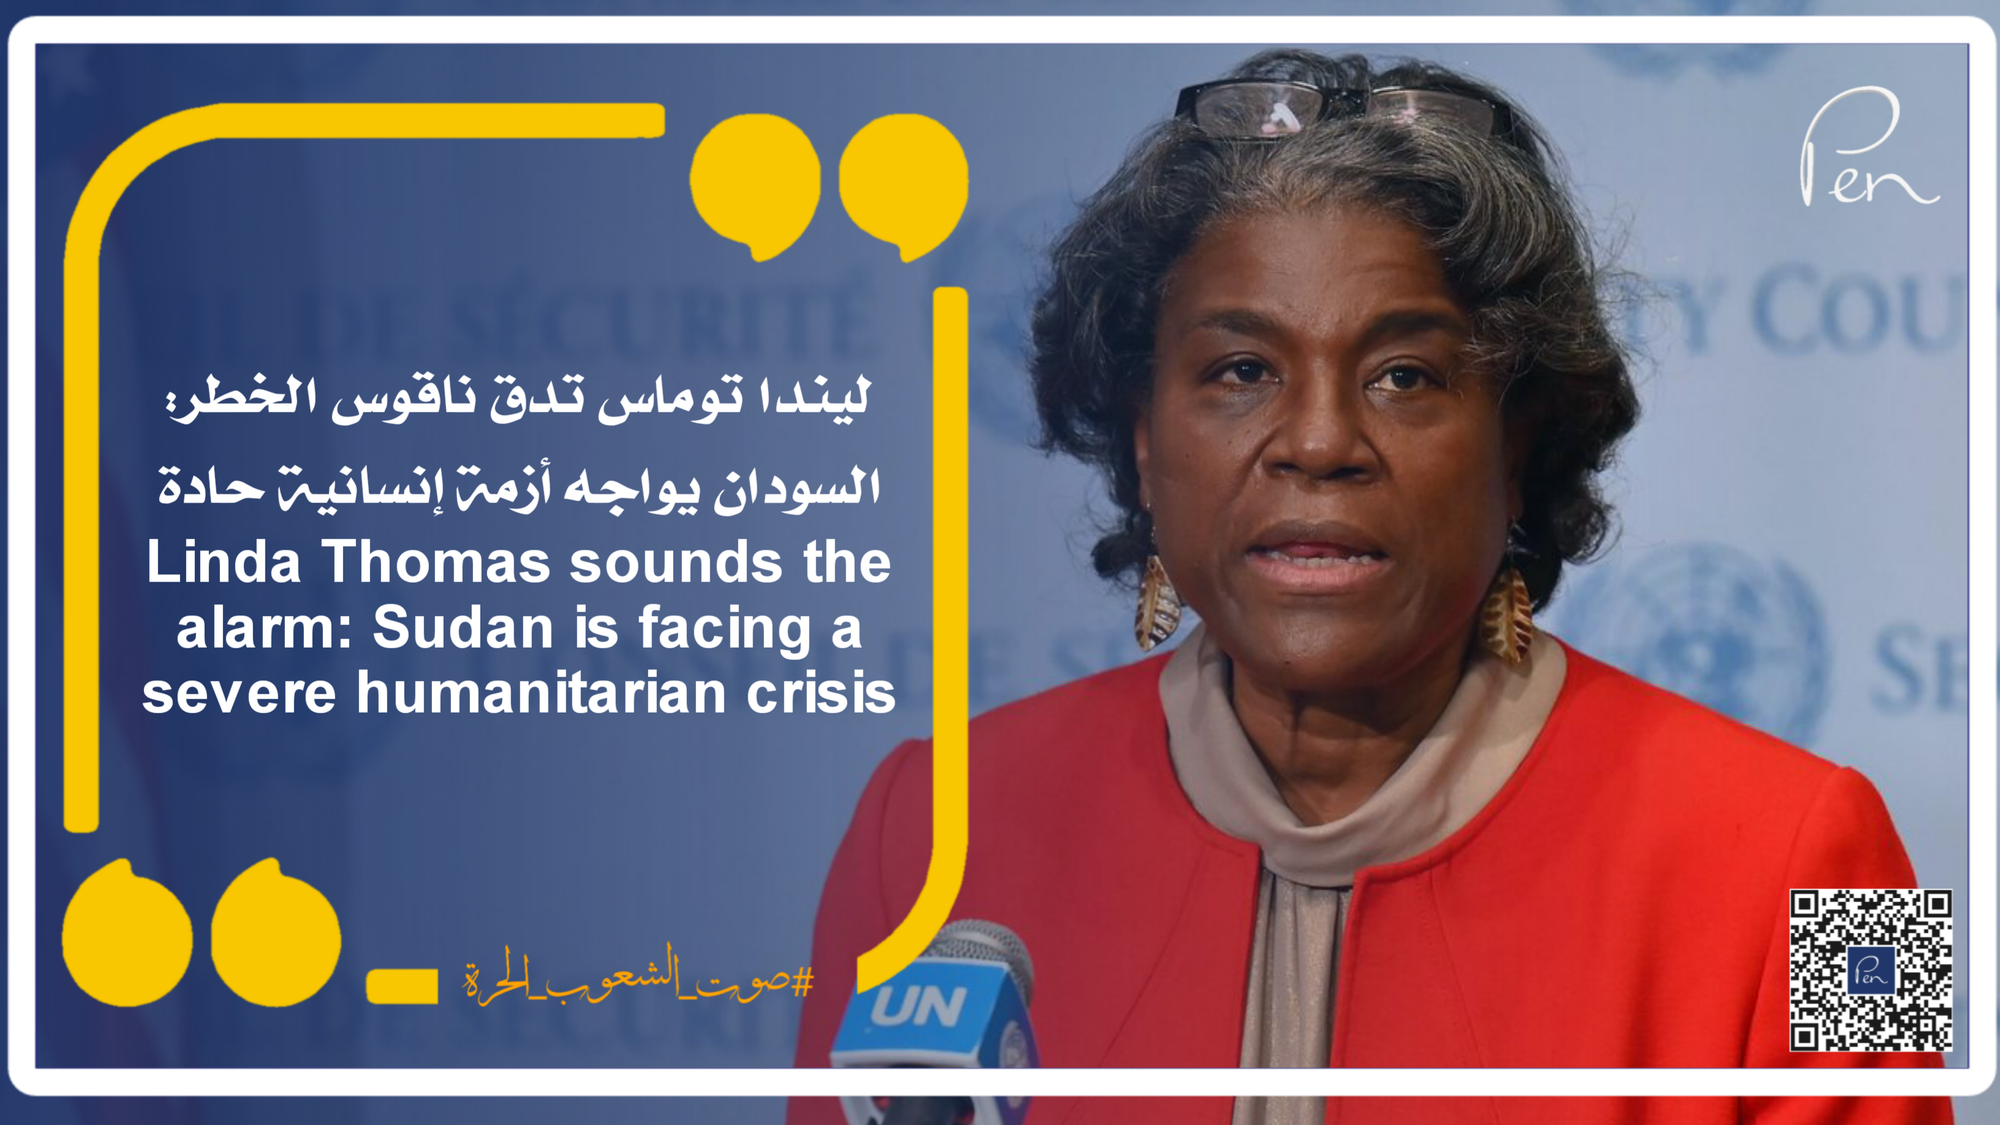 ليندا توماس تدق ناقوس الخطر: السودان يواجه أزمة إنسانية حادة